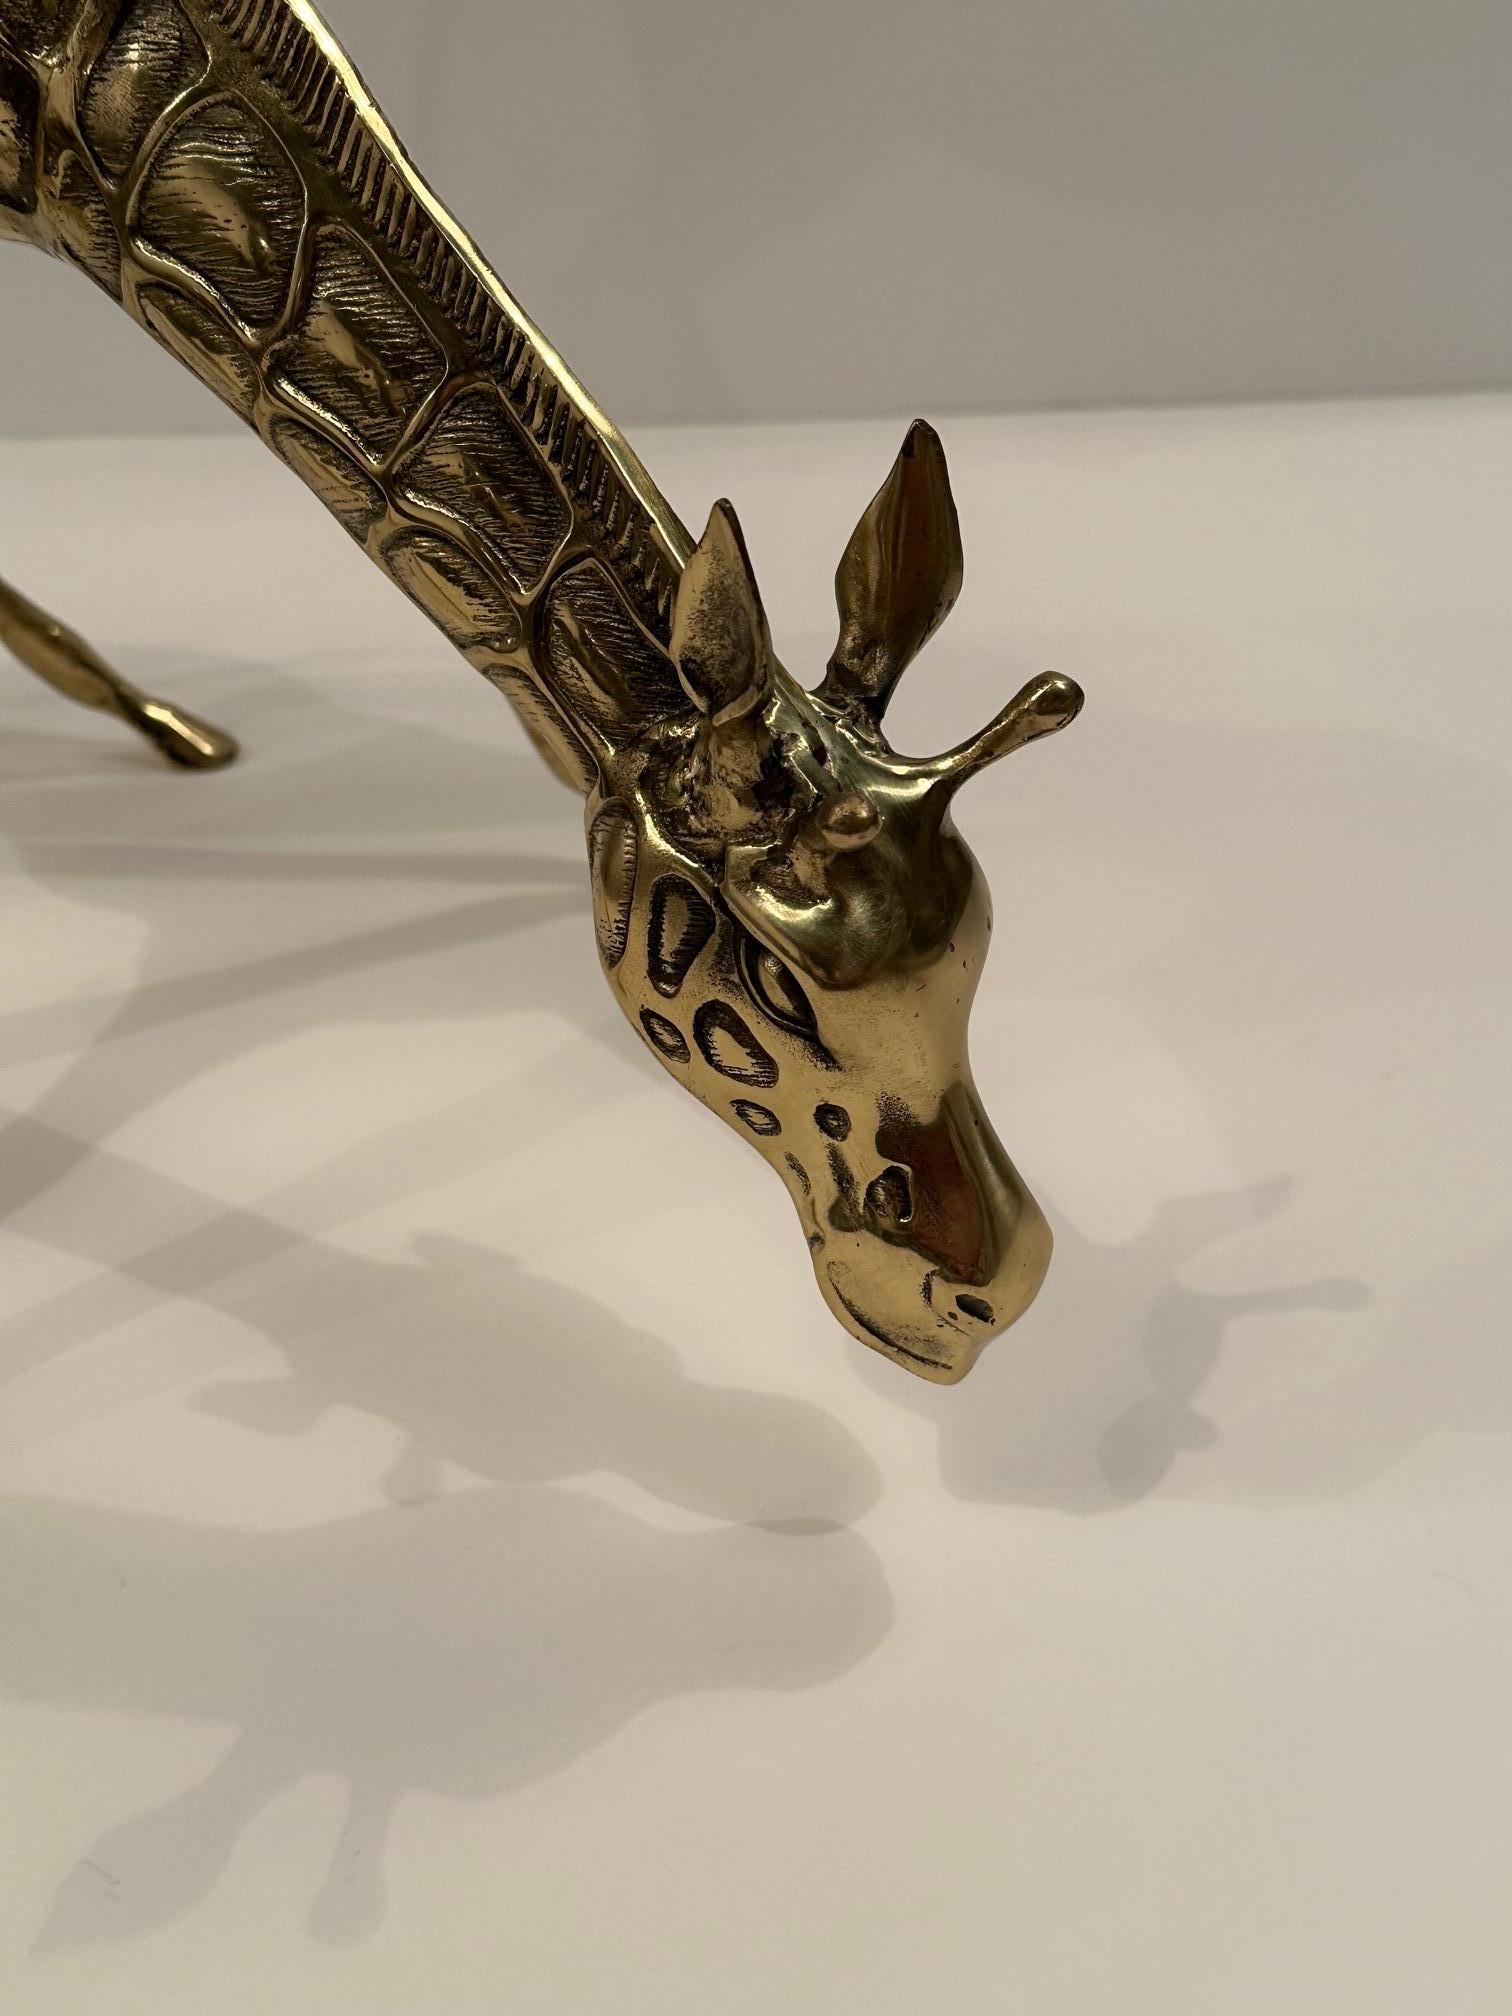 Beautiful cast brass sculpture of a whimsical giraffe.